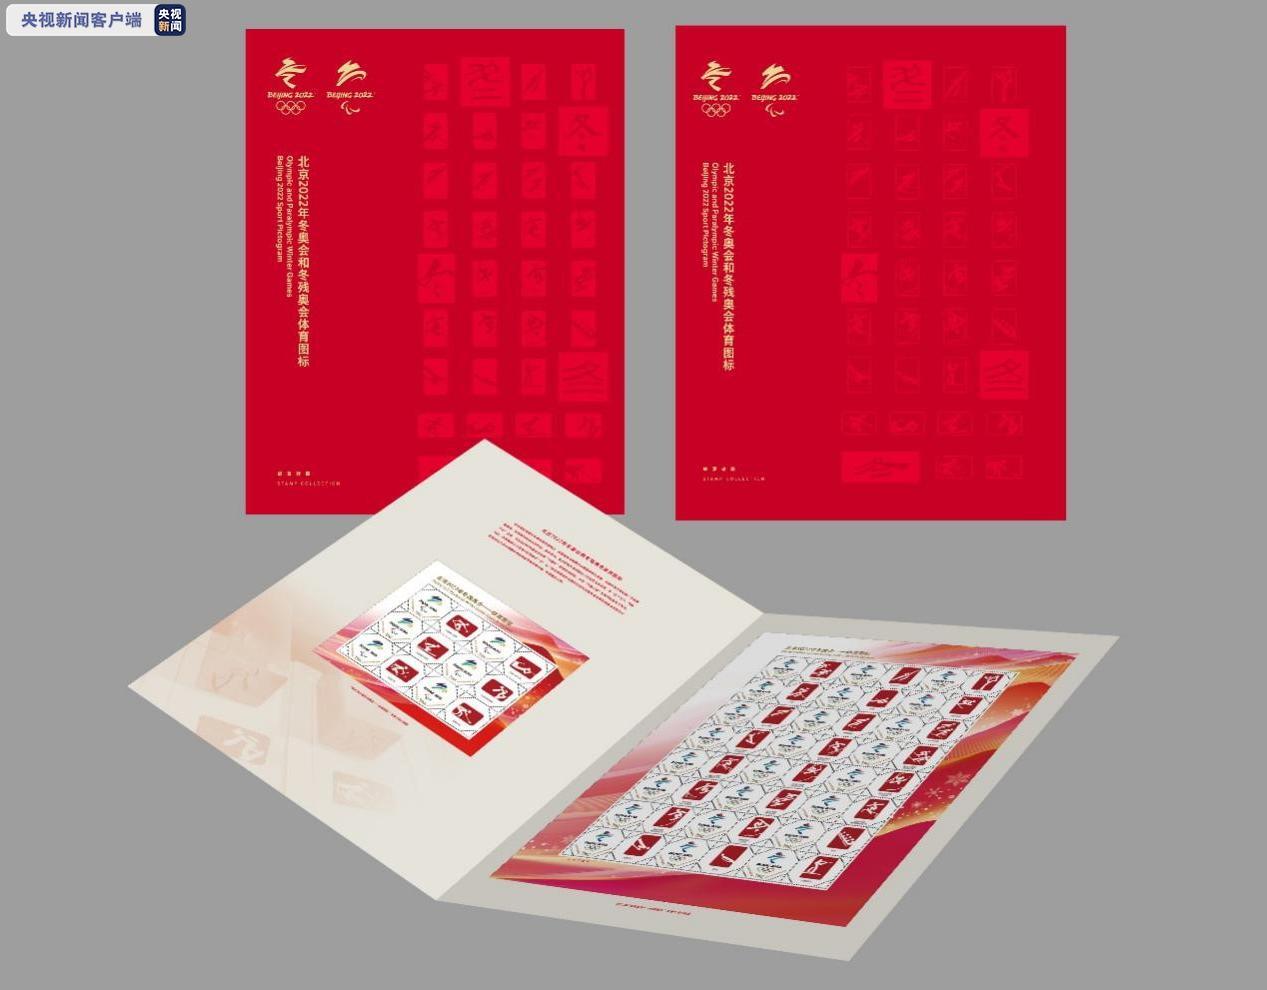 △《北京2022年冬奥会和冬残奥会—体育图标》个性化邮票